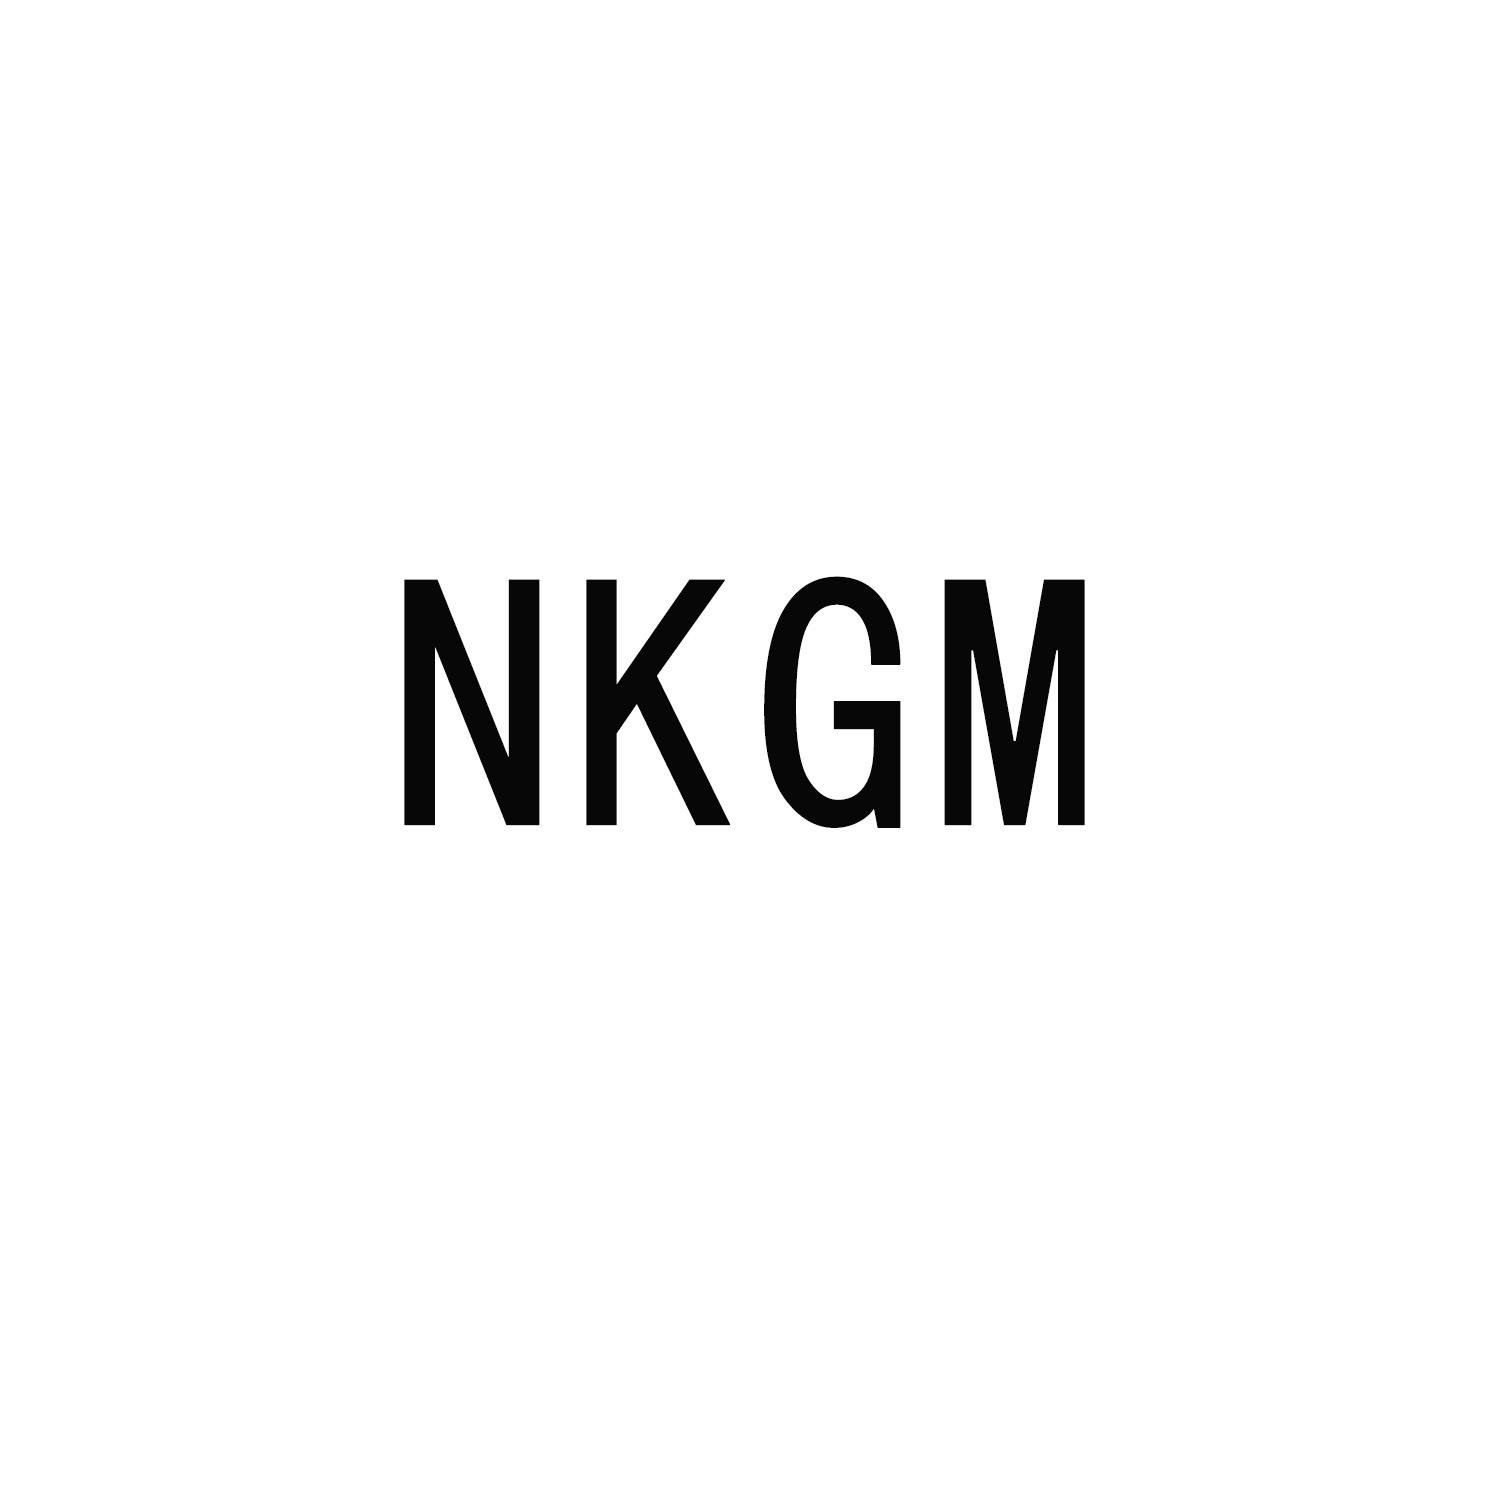 NKGM